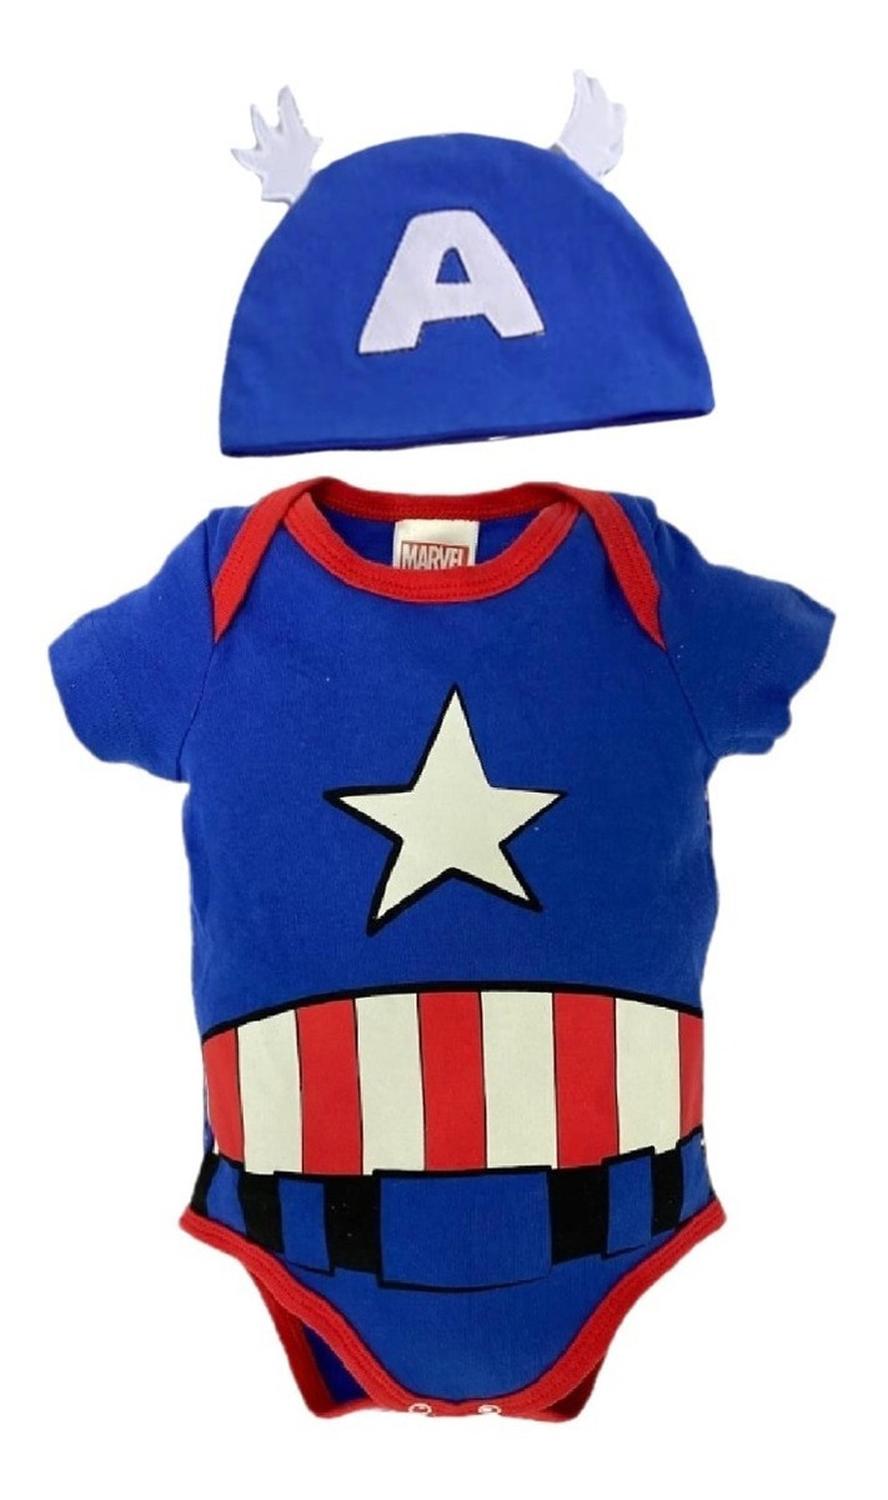 Kit 3 Pañalero Algodón Marvel para Bebé con Gorro Bordado Spiderman, Capitán América, Ironman